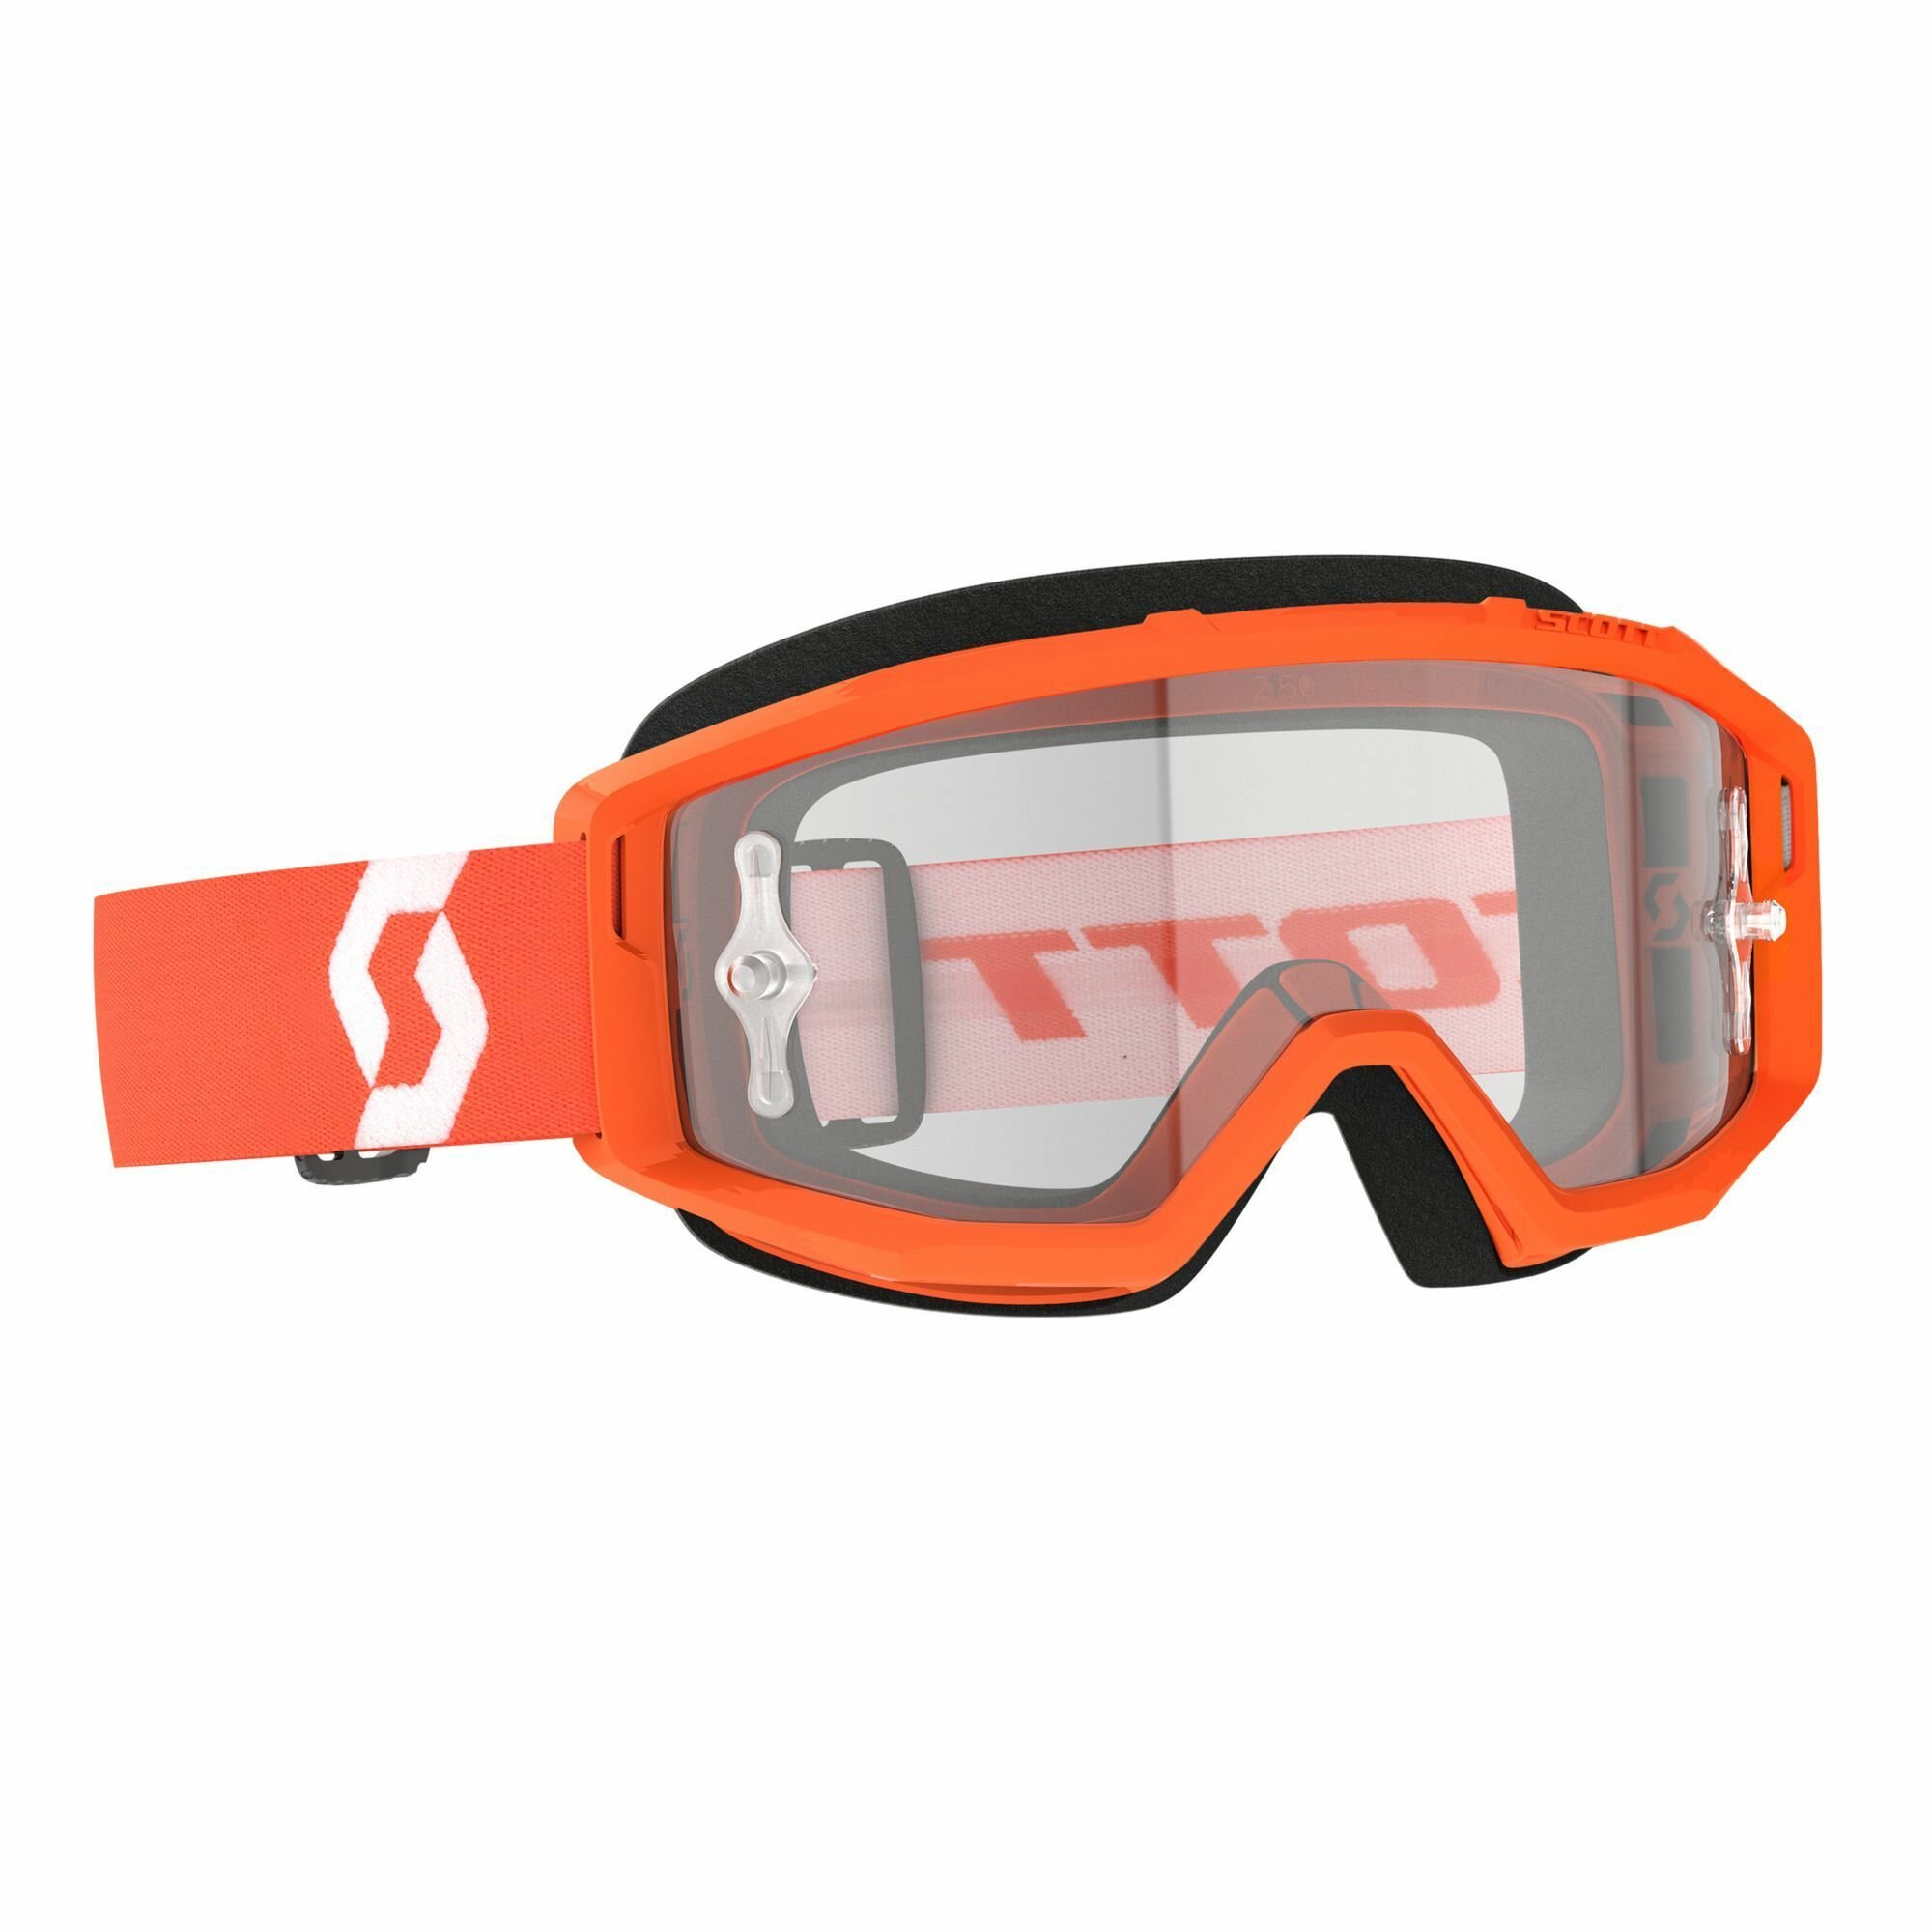 Кроссовые очки маска Scott Primal для мотокросса/эндуро/ очки для экстремальных видов спорта